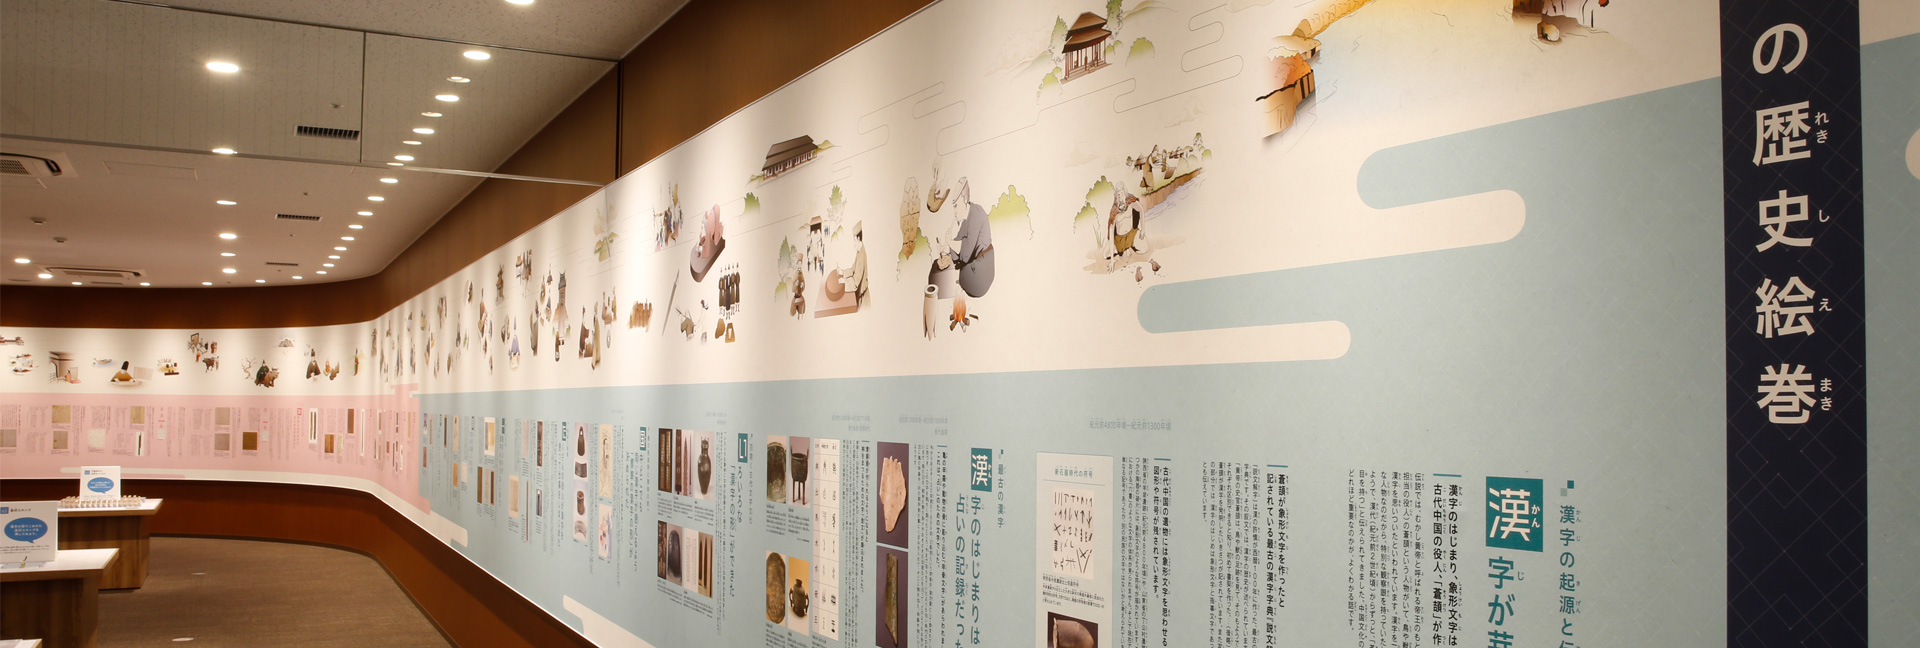 日本の漢字文化を学べる 漢検 漢字博物館 図書館 Articles Japan House Sao Paulo